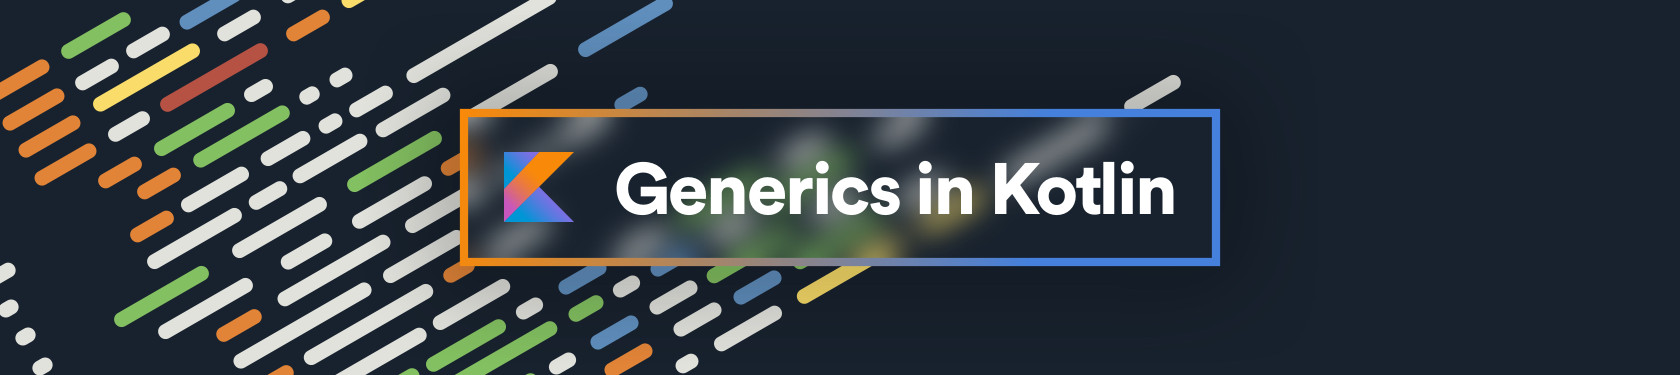 Generics in Kotlin